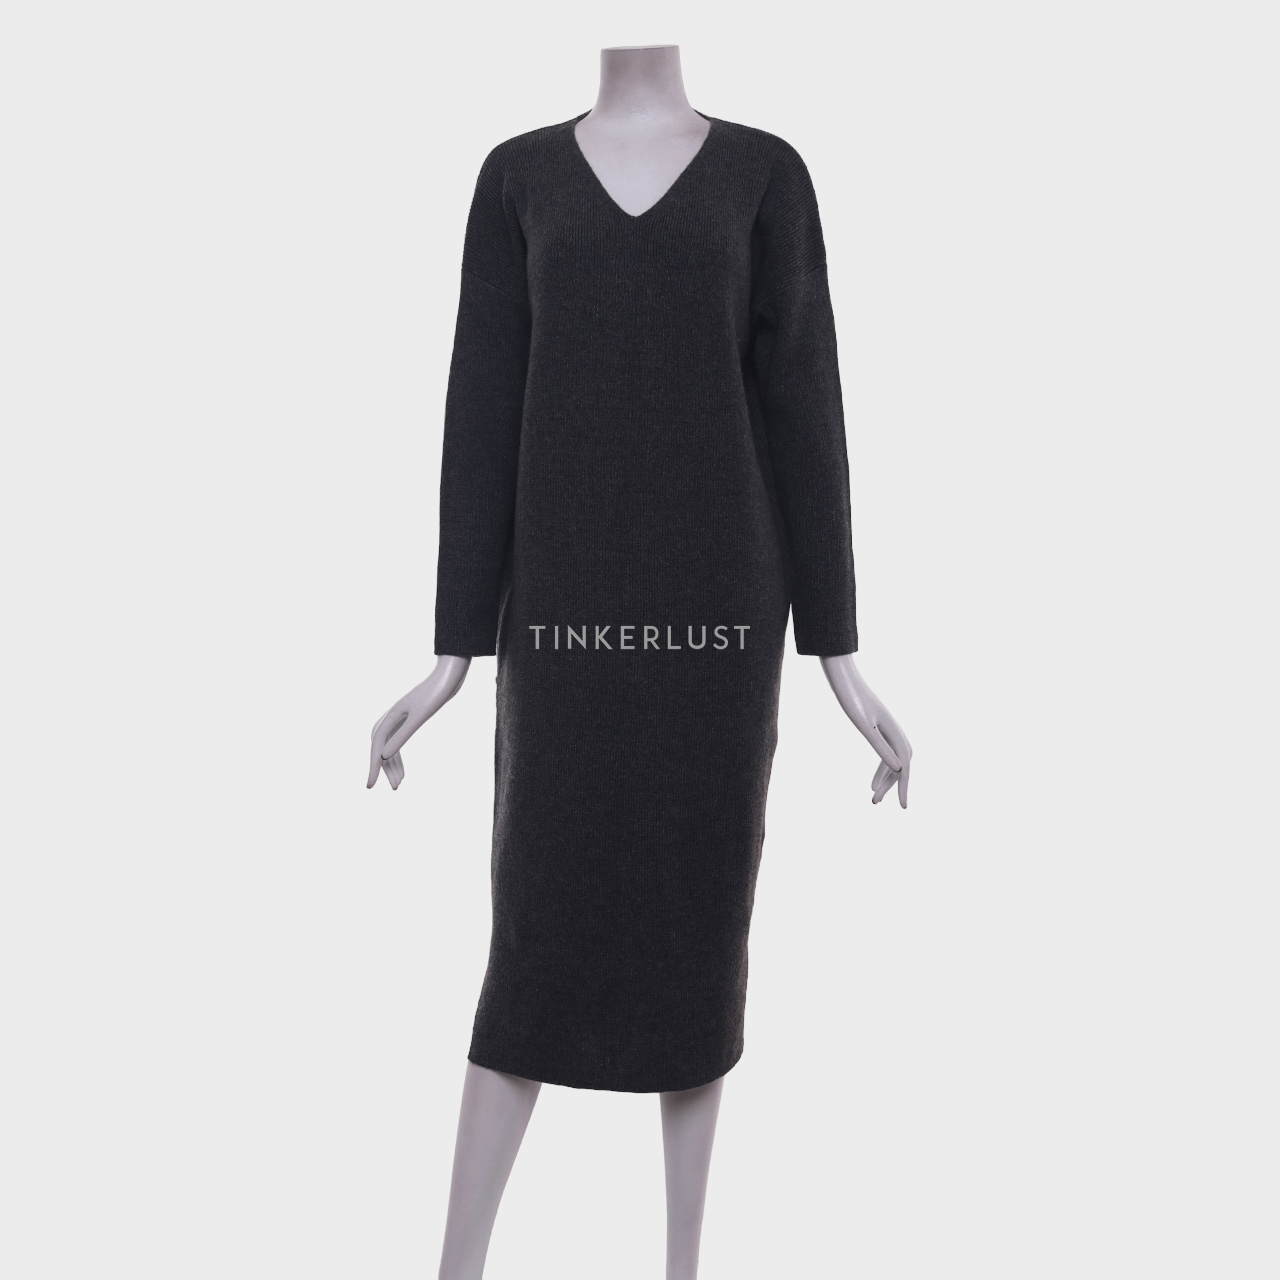 UNIQLO Grey Midi Dress